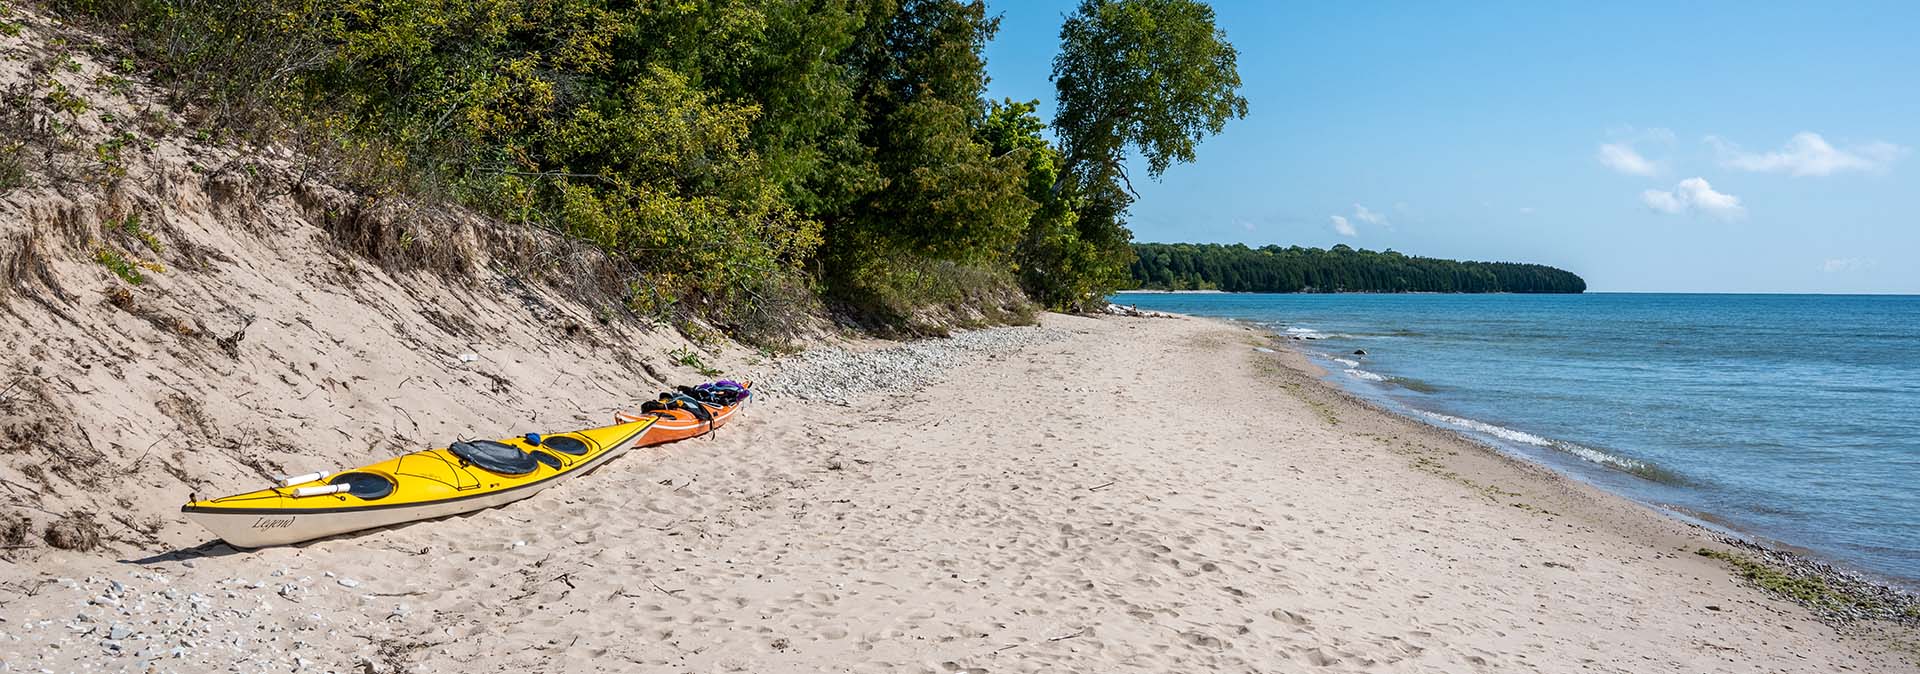 A beach with a kayak on the sand